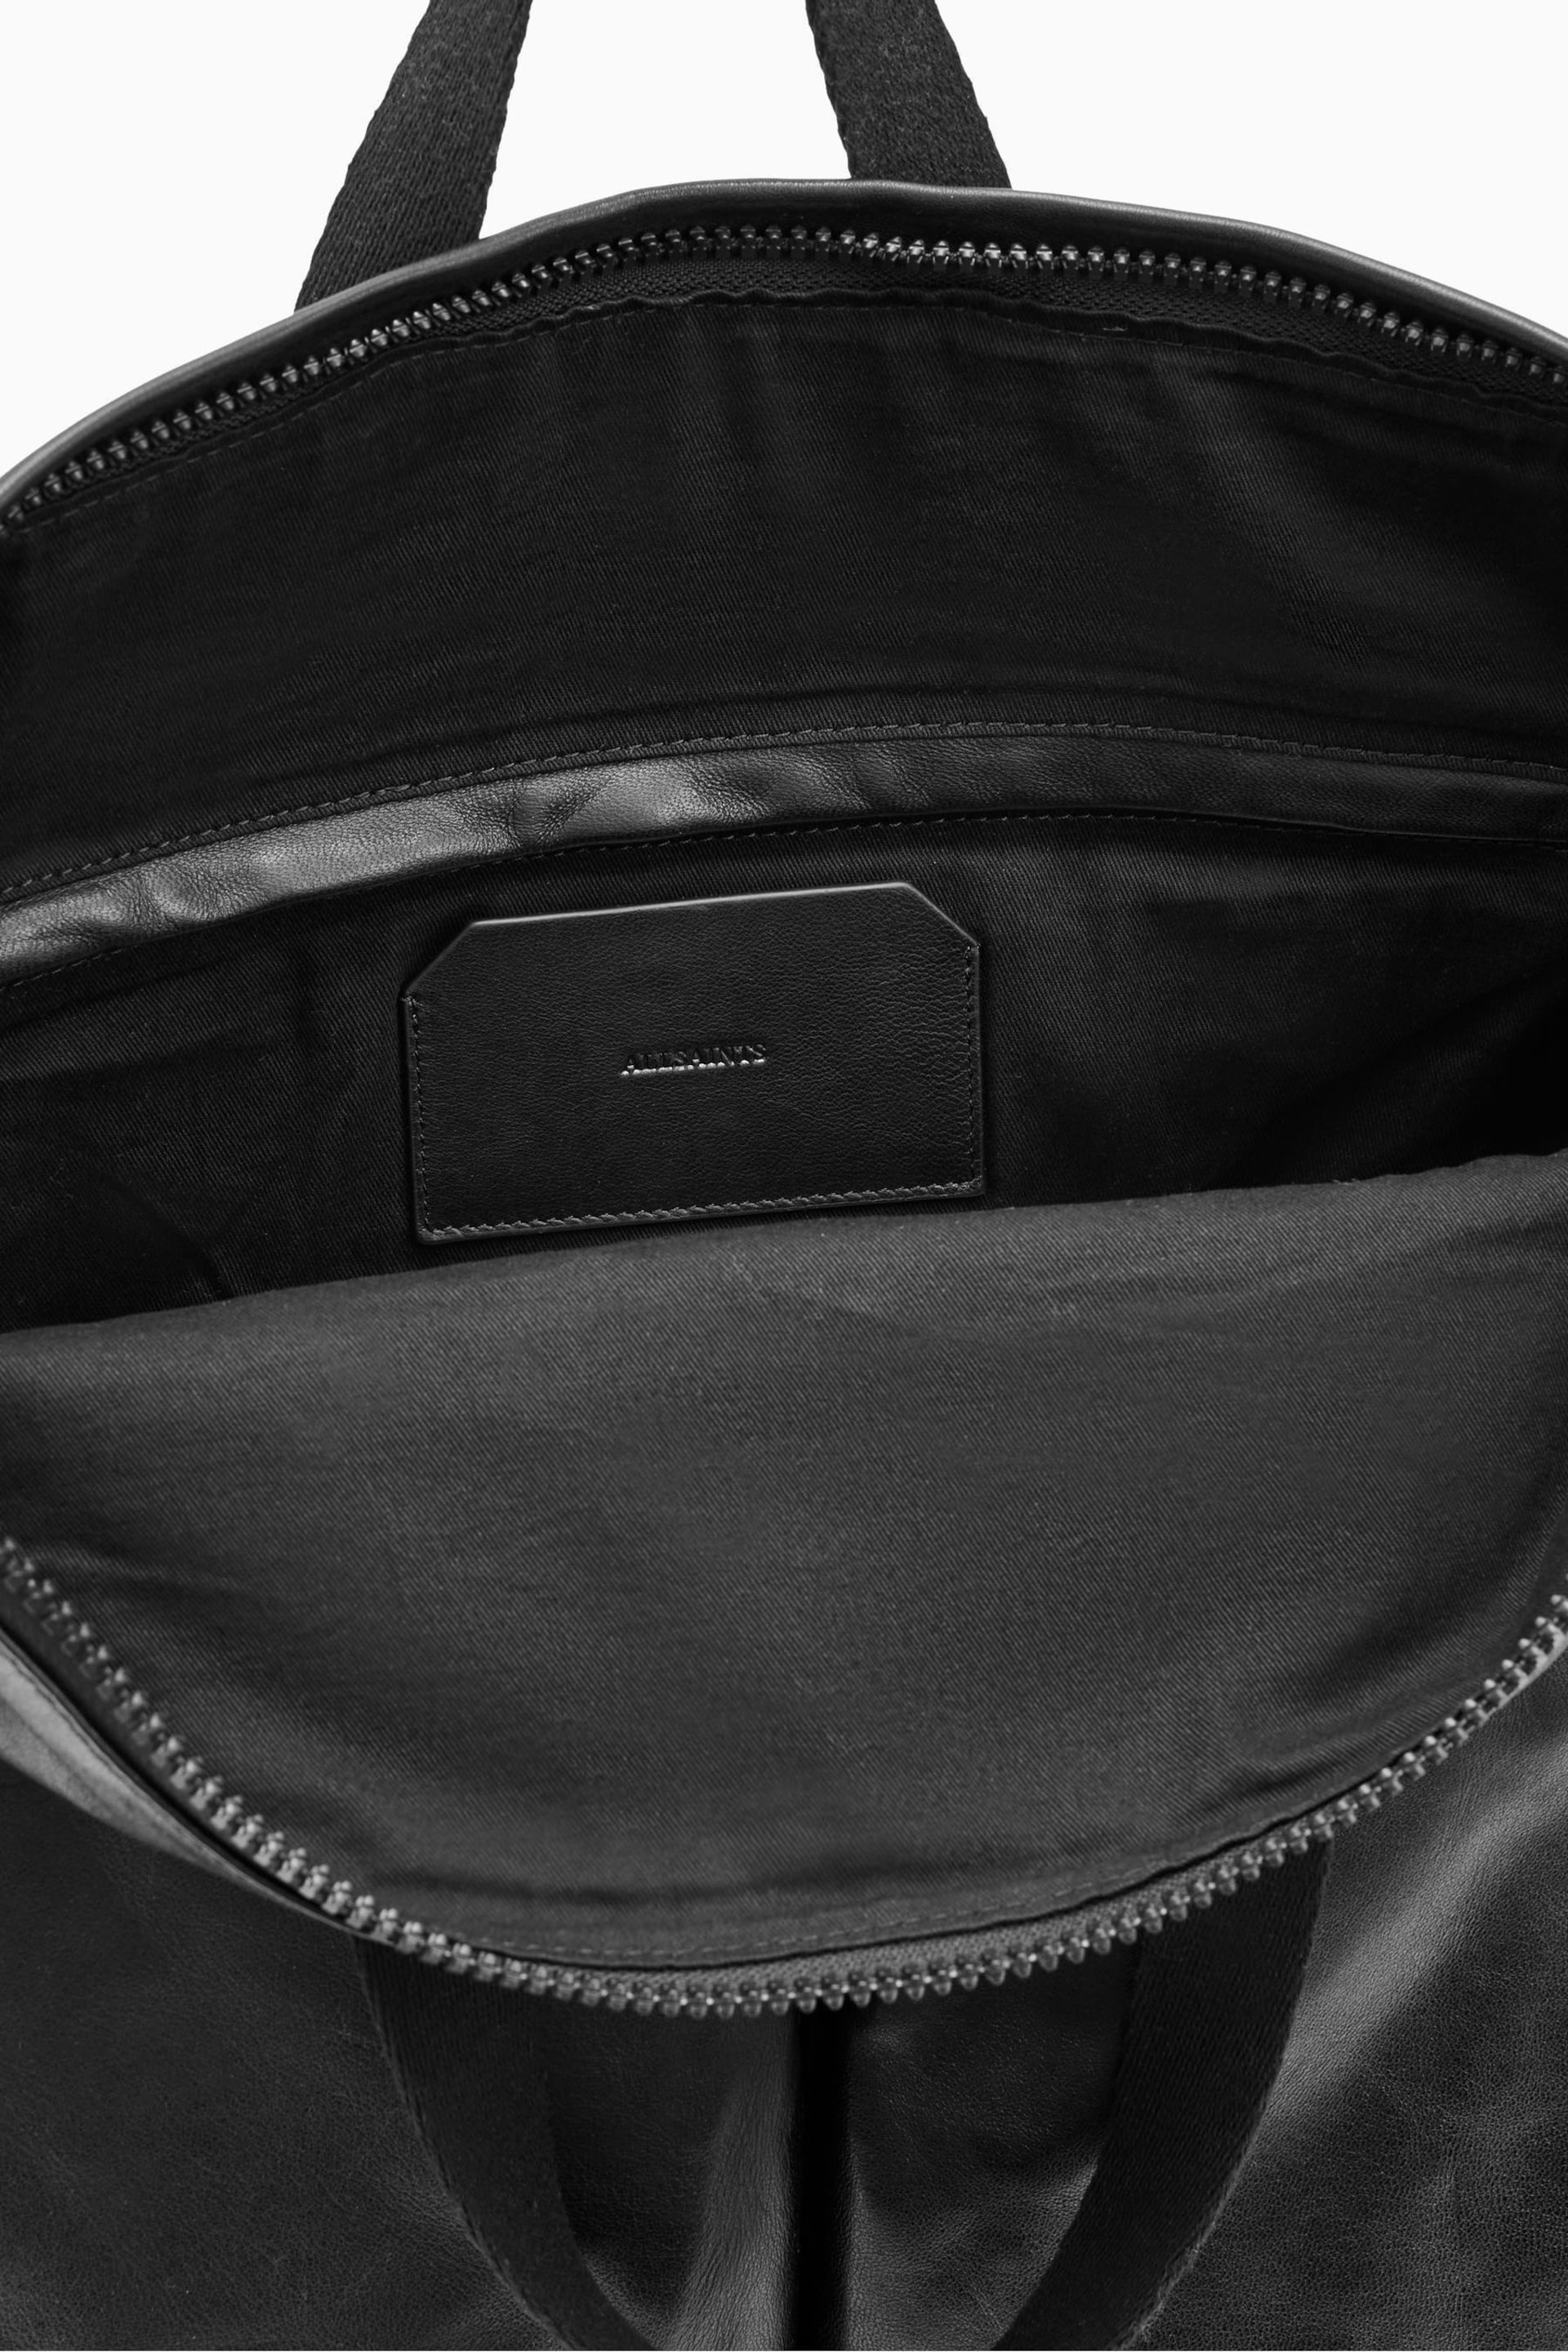 AllSaints Black Force Backpack - Image 5 of 5